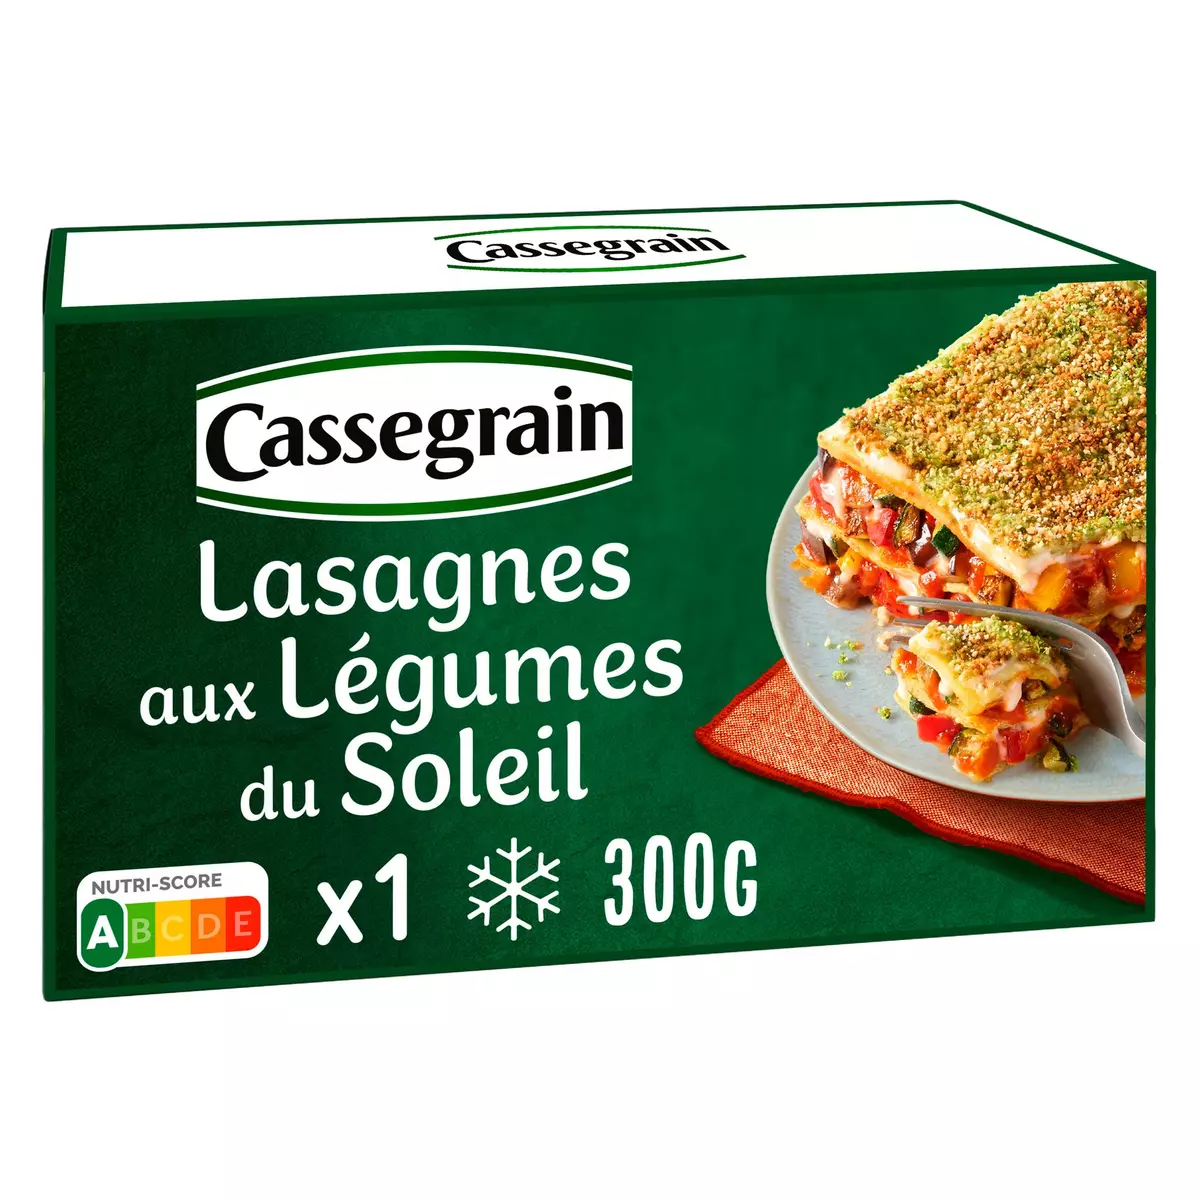 CASSEGRAIN Lasagnes aux Légumes du soleil 1 portion 300g